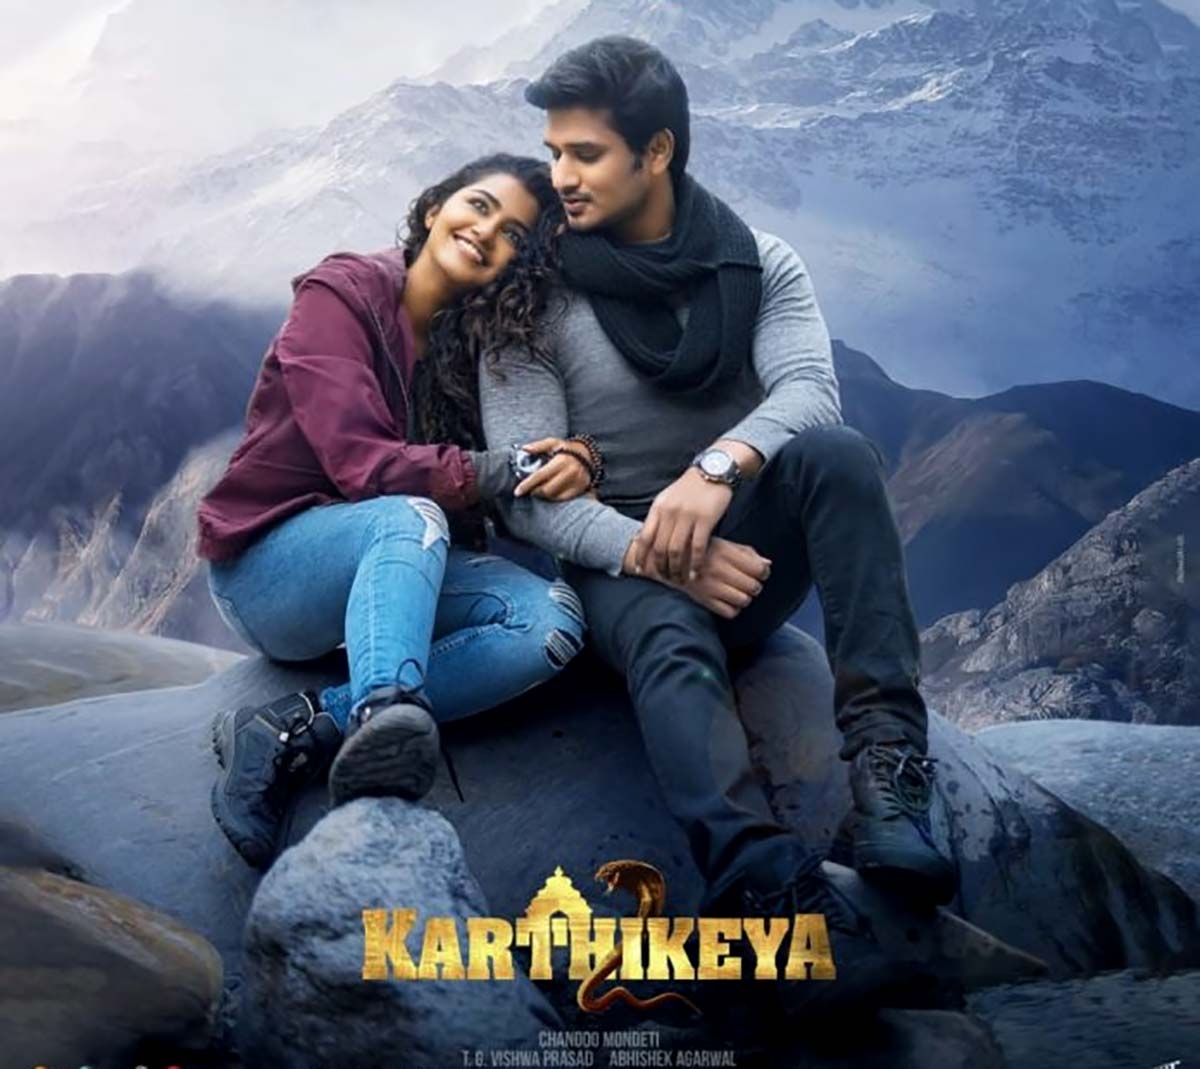 Karthikeya 2 Movie Review